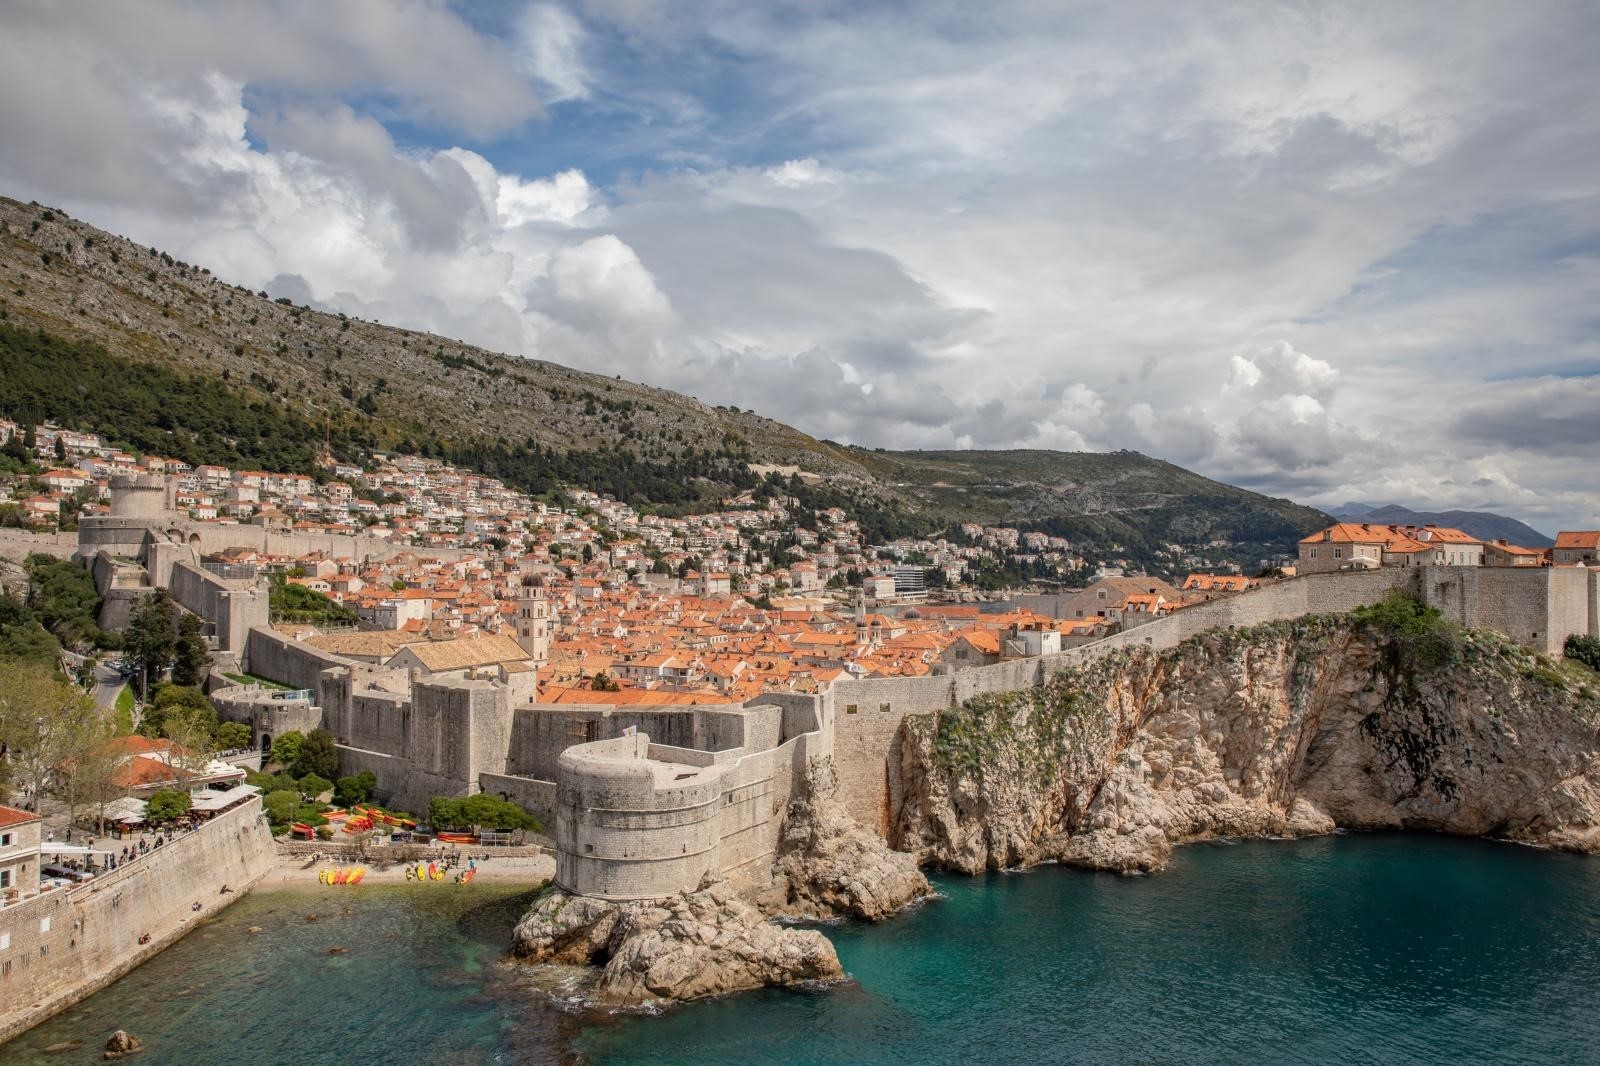 Dubrovnik: Pogled na staru gradsku jezgru 13.04.2019., Stara gradska jezgra, Dubrovnik - Pogled na staru gradsku jezgru sa tvrdjave Lovrjenac.
Photo: Grgo Jelavic/PIXSELL